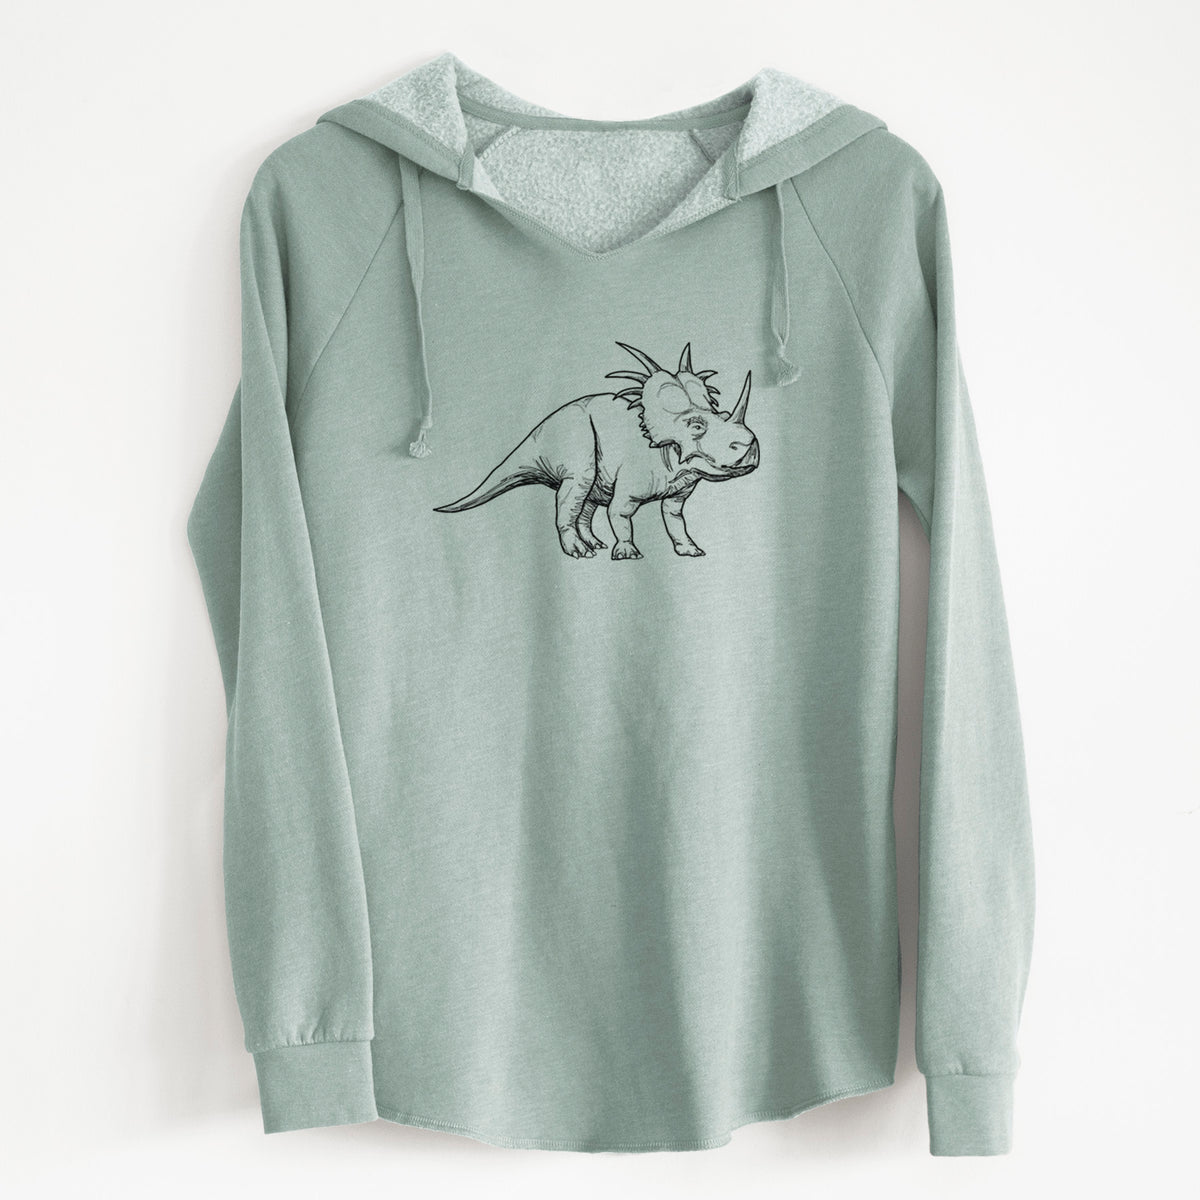 Styracosaurus Albertensis - Cali Wave Hooded Sweatshirt